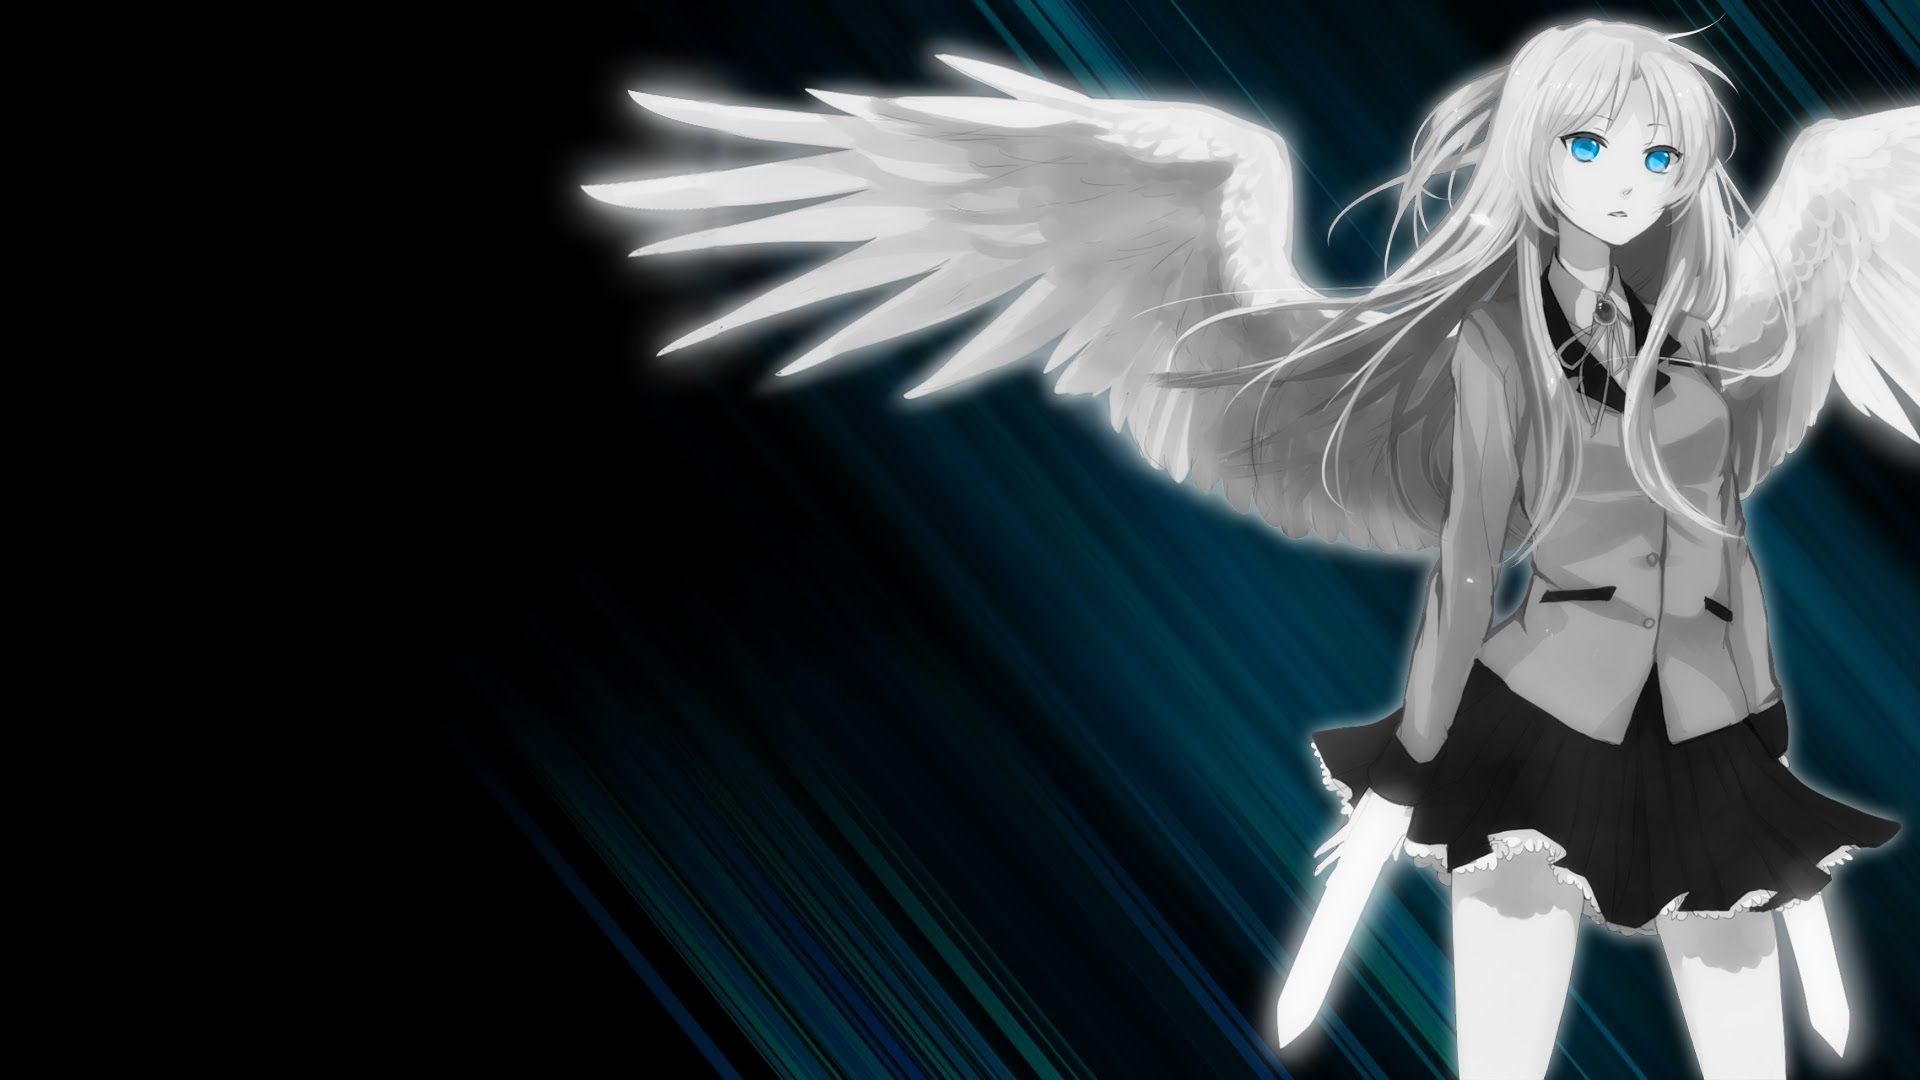 Fresh Anime Fallen Angel Girl Wallpaper Design - Hd Wallpaper 1920x1080 Anime , HD Wallpaper & Backgrounds